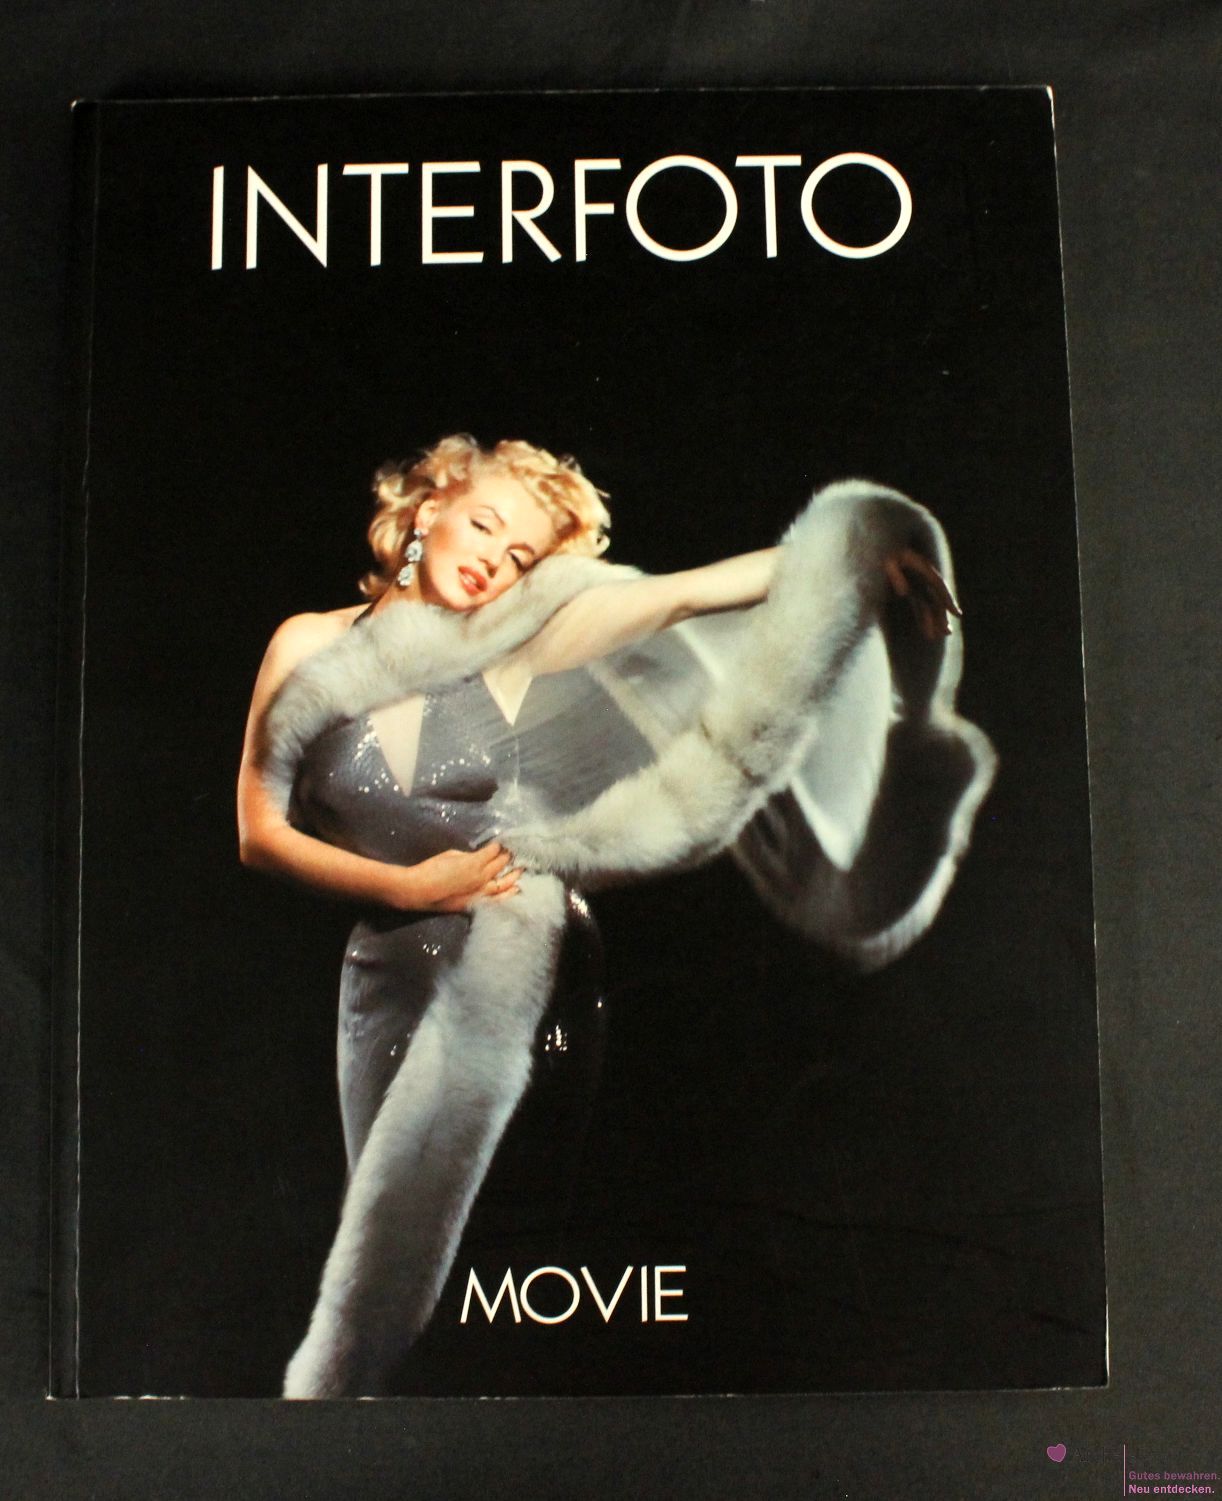 Interfoto, 3 Bildbände - Movie, Movie II, Anthology, gebraucht